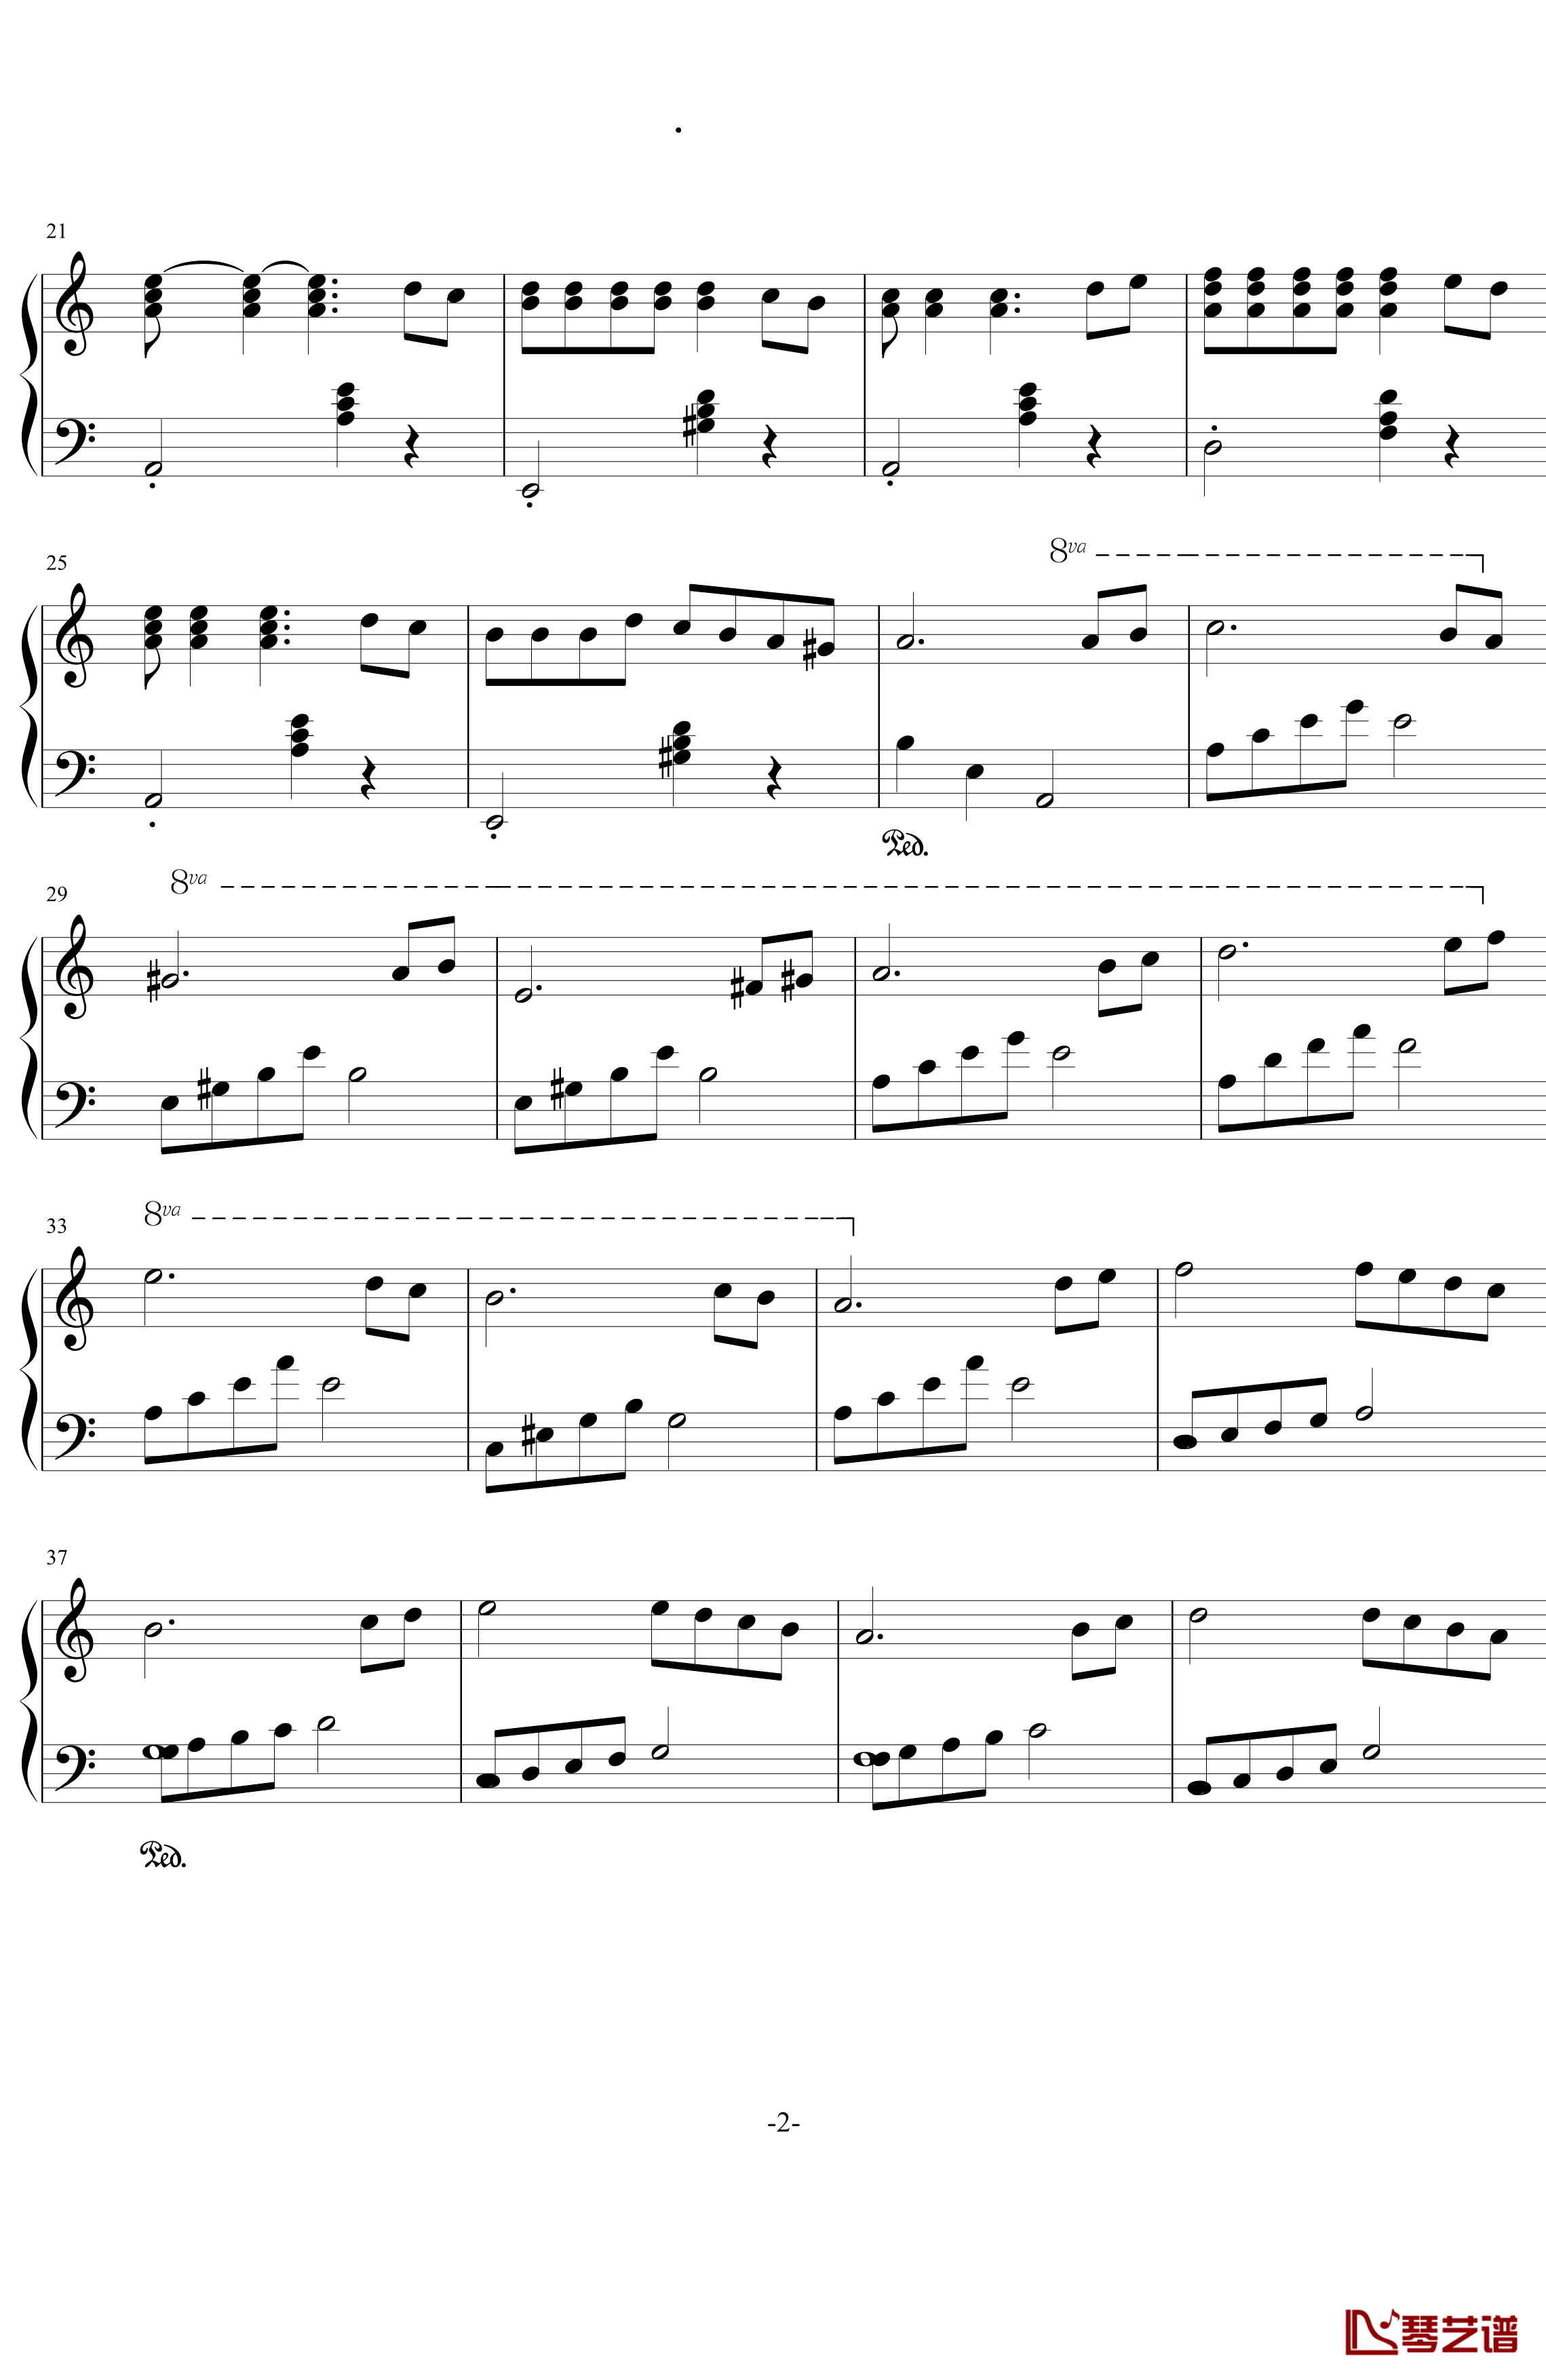 斯拉夫之歌钢琴谱-简化版-戴维.赫勒韦尔2